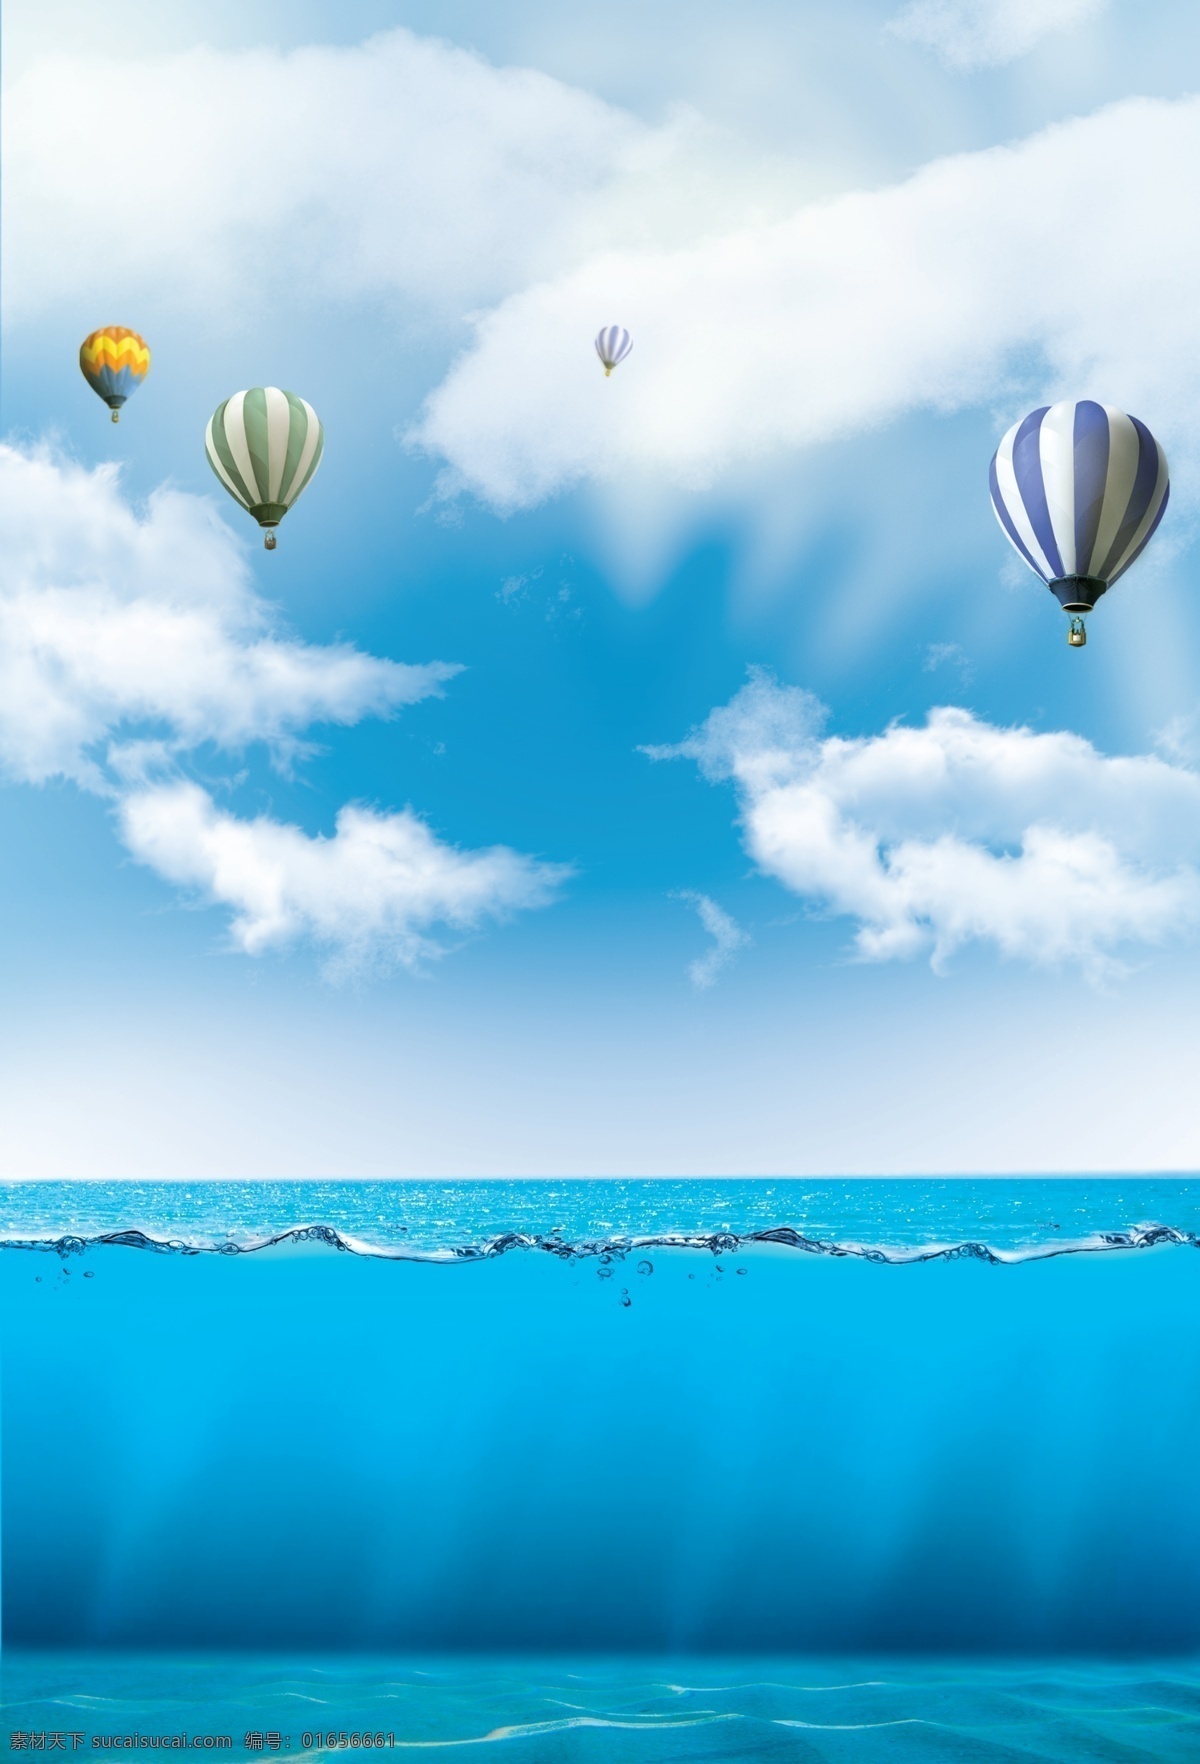 海水背景 海面背景 海底背景 蓝色大海背景 天空白云 蓝天背景 云朵背景 热气球 氢气球 波浪 水面 旅游背景 旅行背景 旅游 自然景观 自然风光